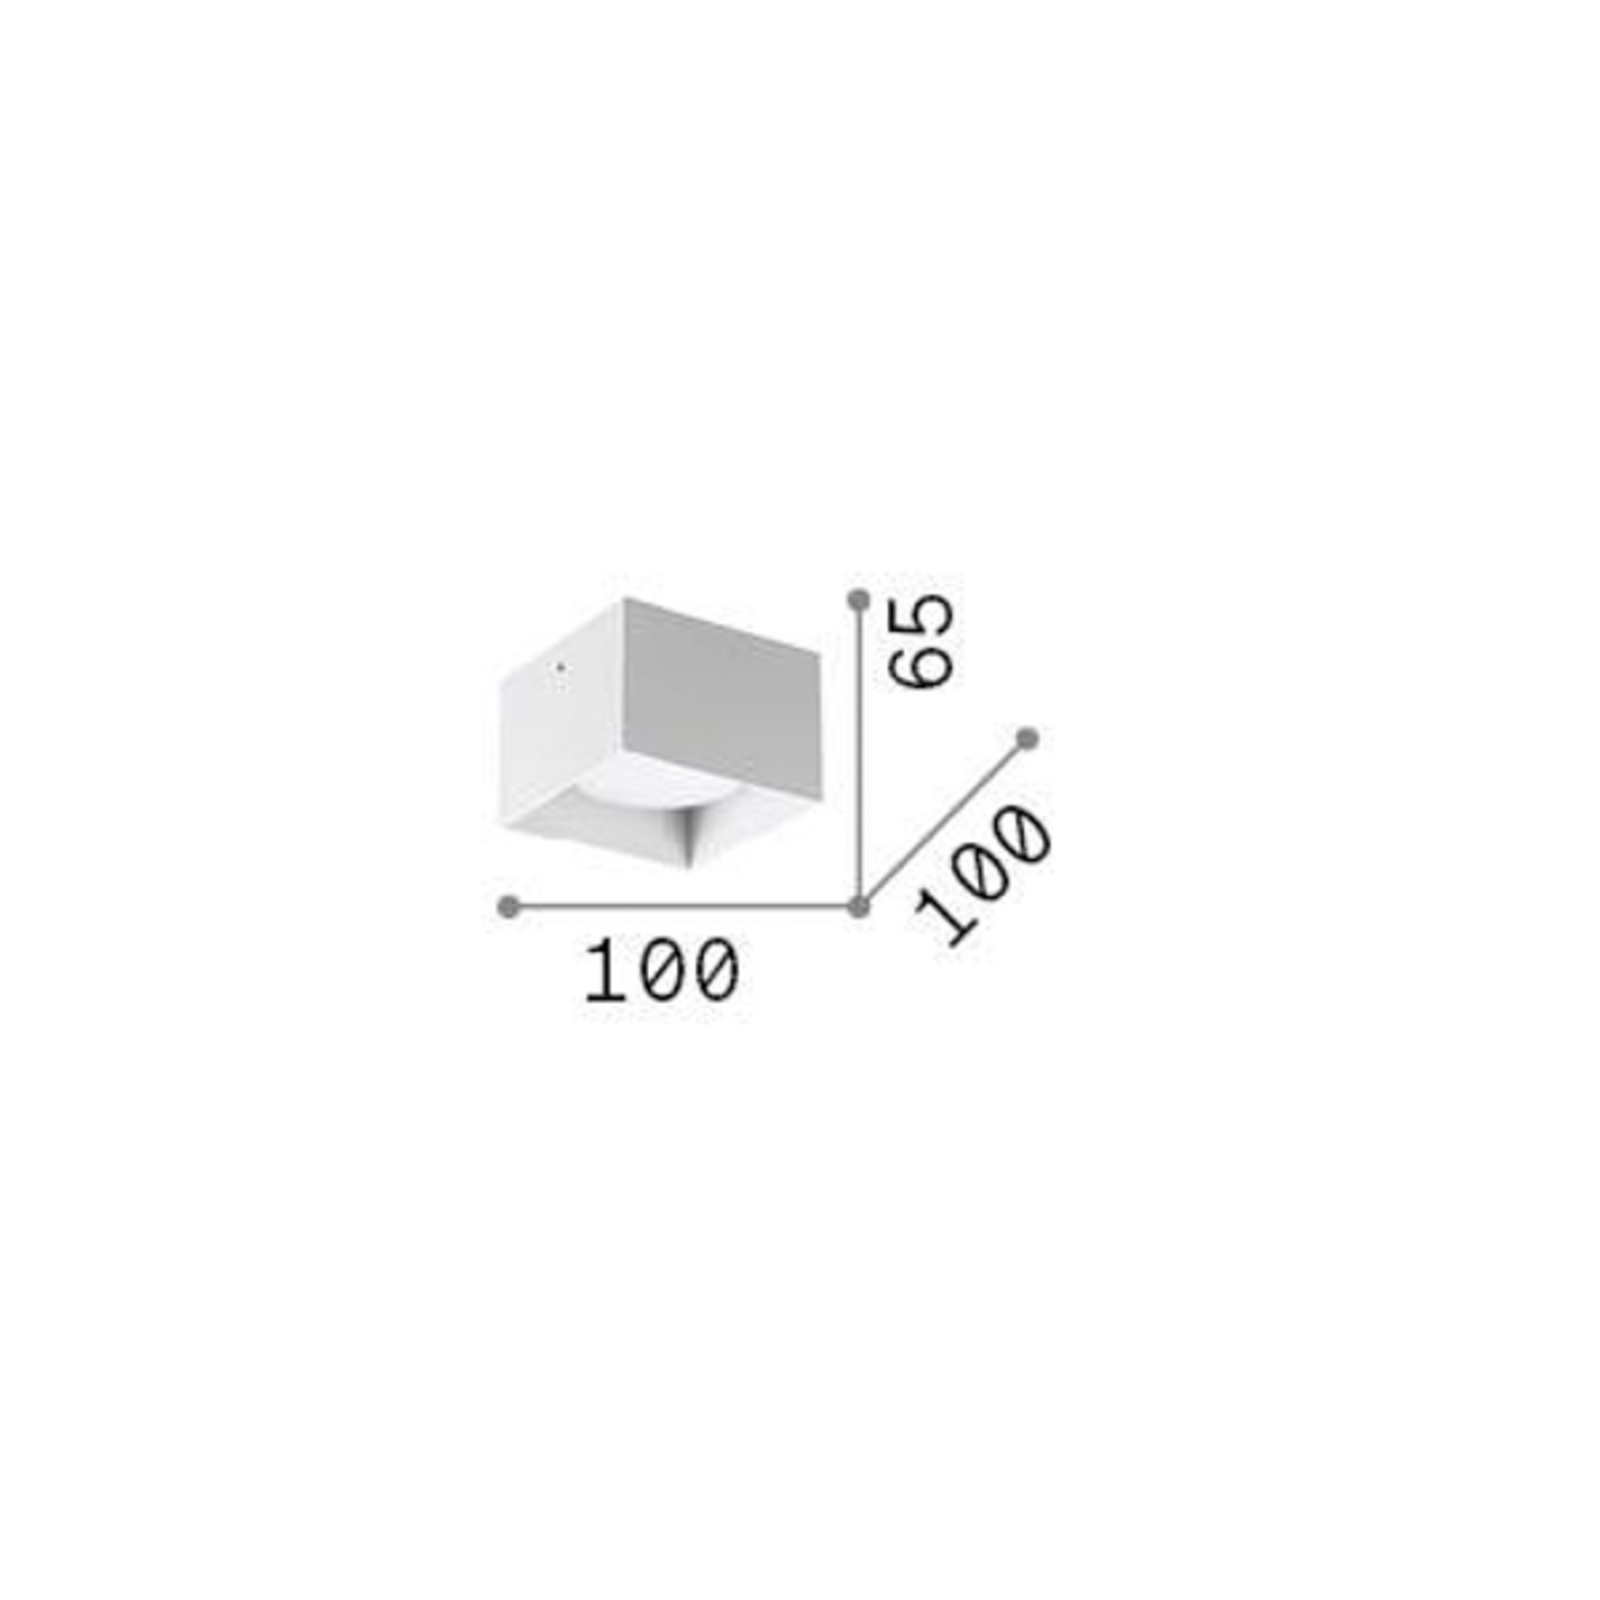 Ideal Lux ledlámpa Spike Square, fehér, alumínium, 10 x 10 cm, 10 x 10 cm